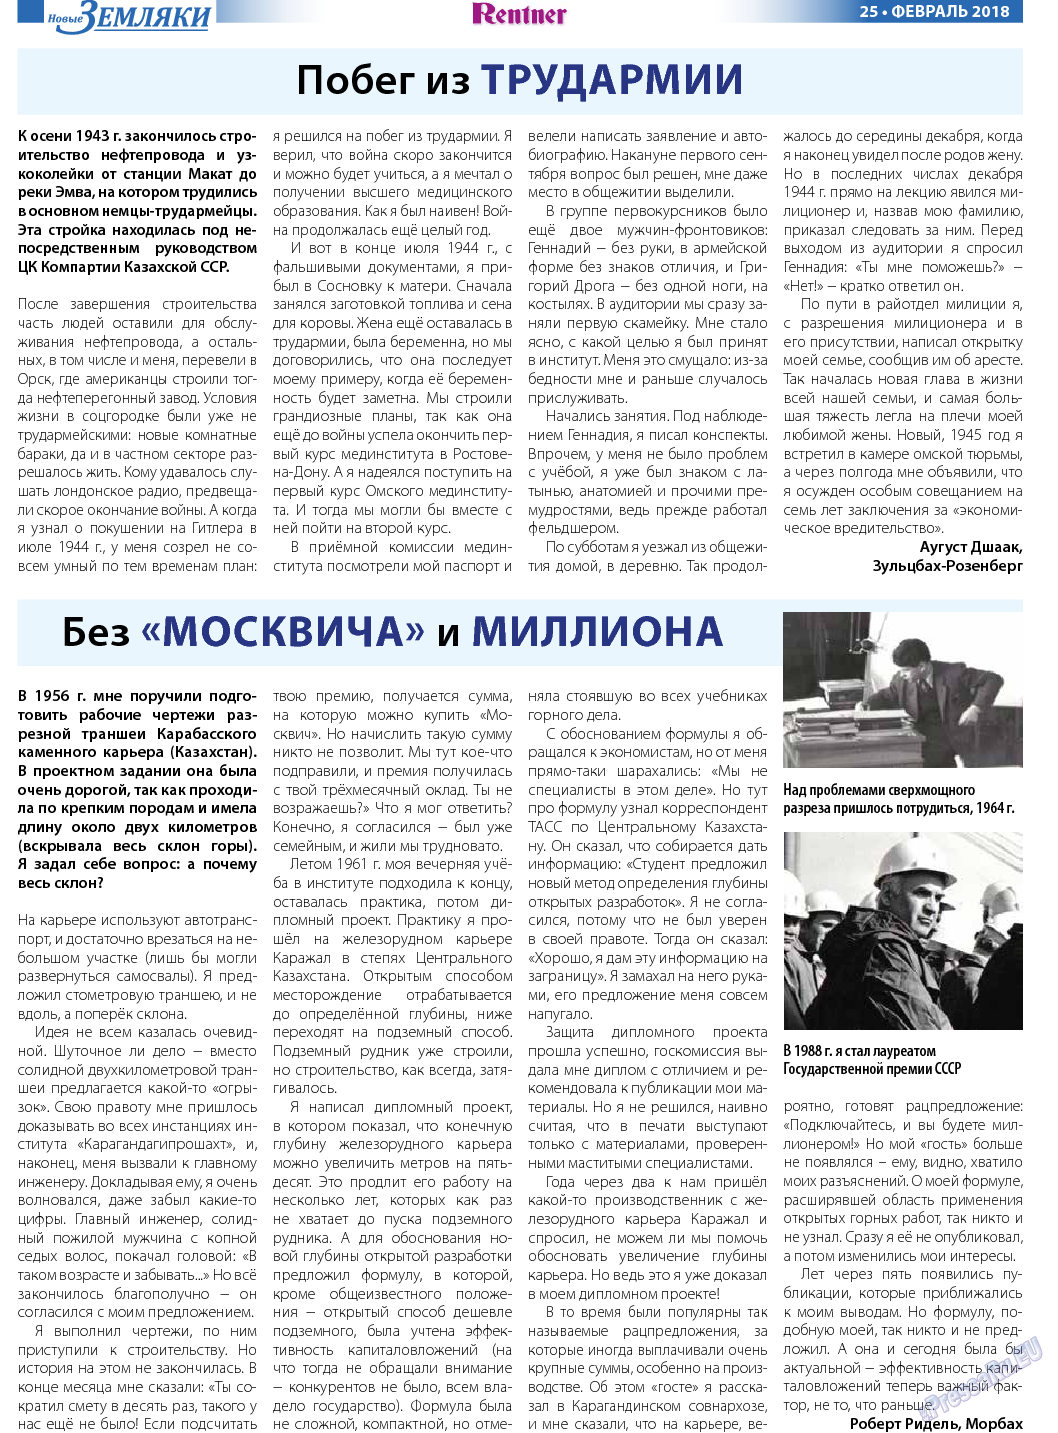 Новые Земляки, газета. 2018 №2 стр.25